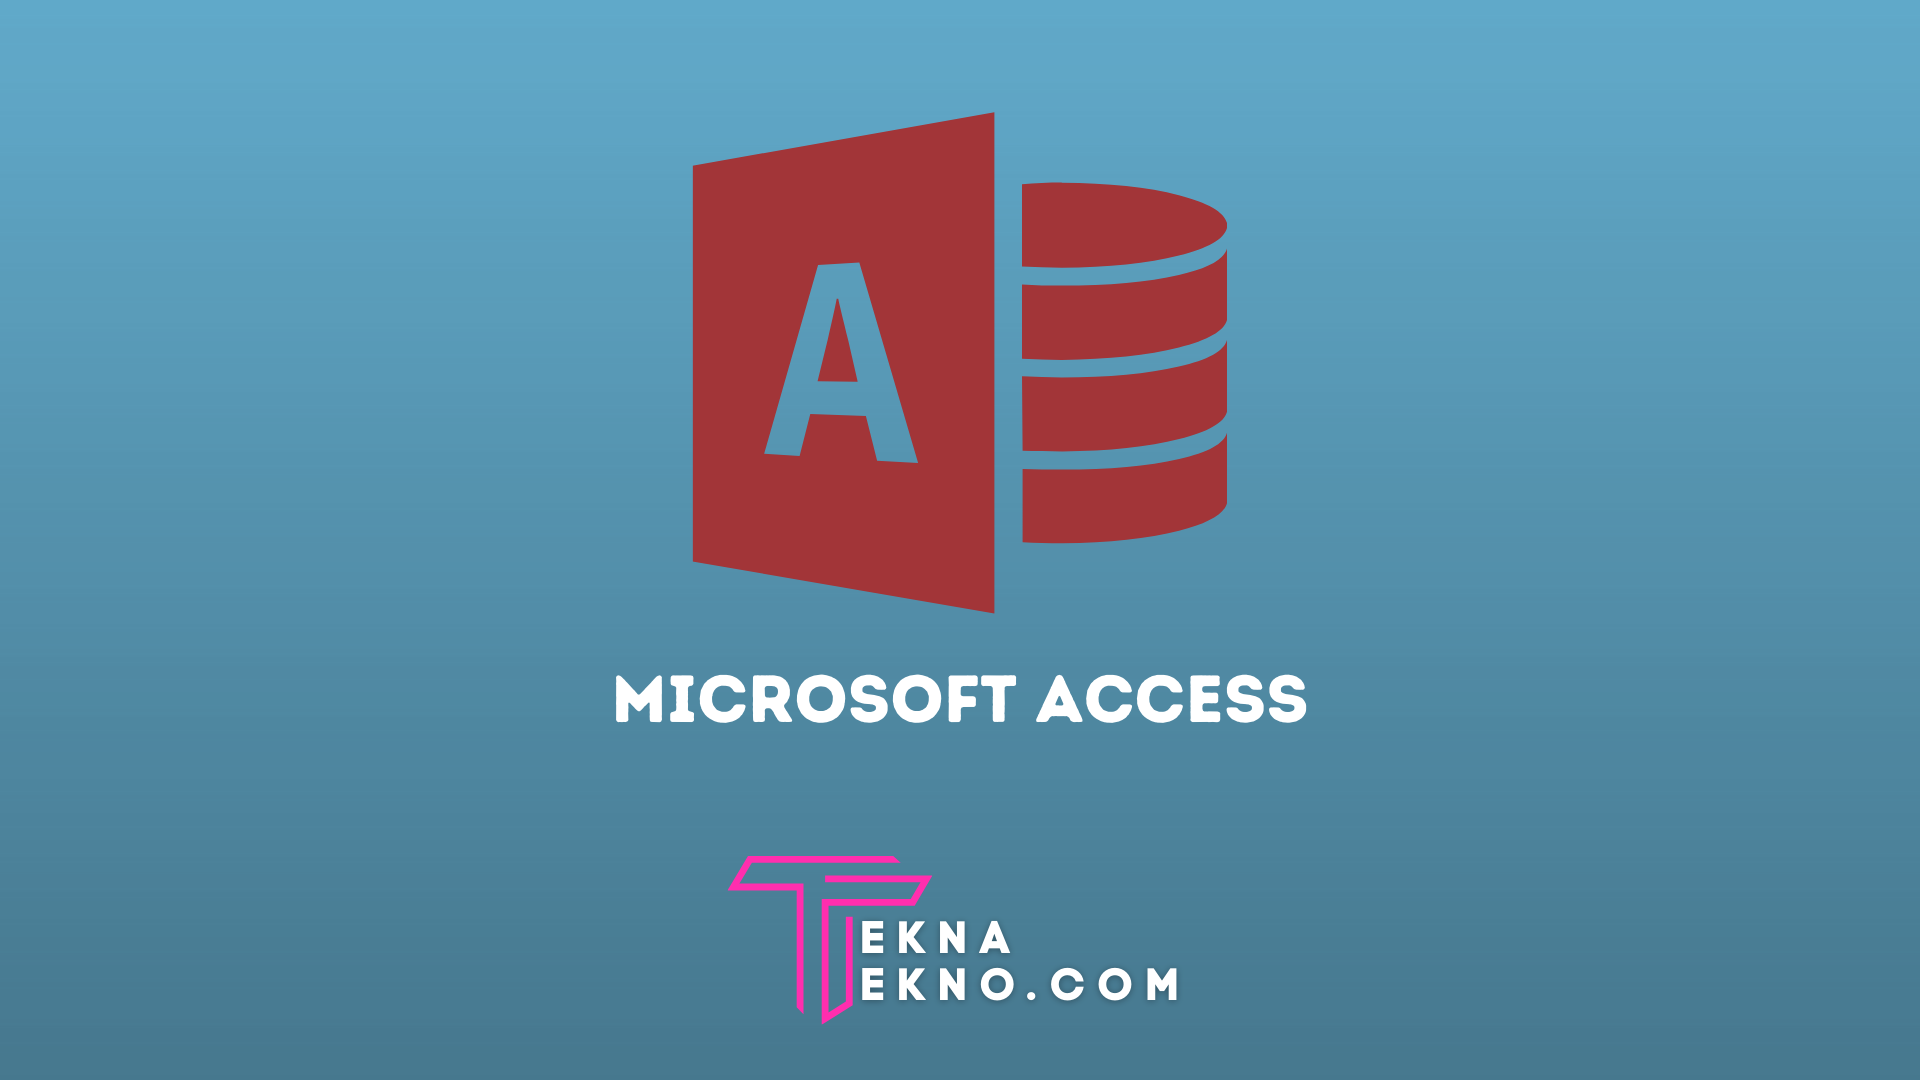 Microsoft Access Adalah: Pengertian, Fungsi, Manfaat dan Fiturnya